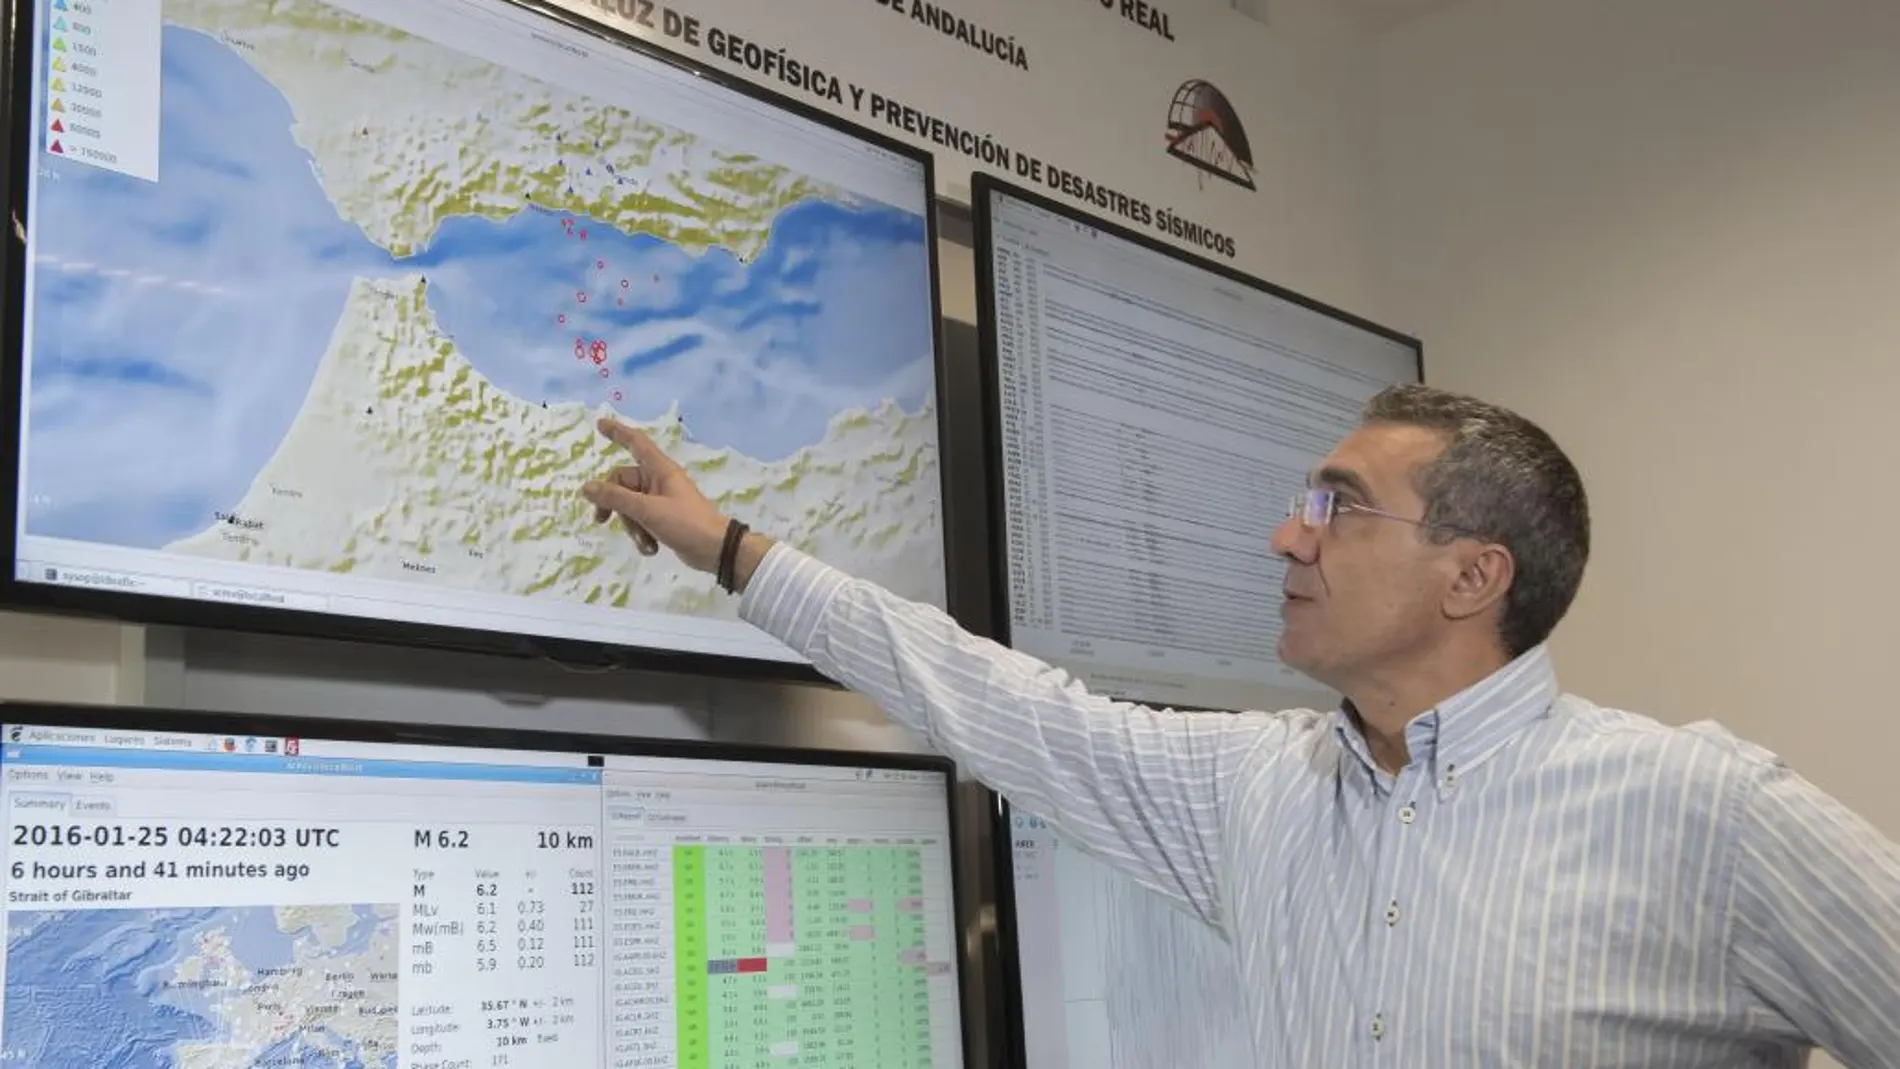 El director del Instituto Andaluz de Geofísica de Granada, José Morales, señala las zonas con mayor y menor intensidad donde se han sentido terremotos